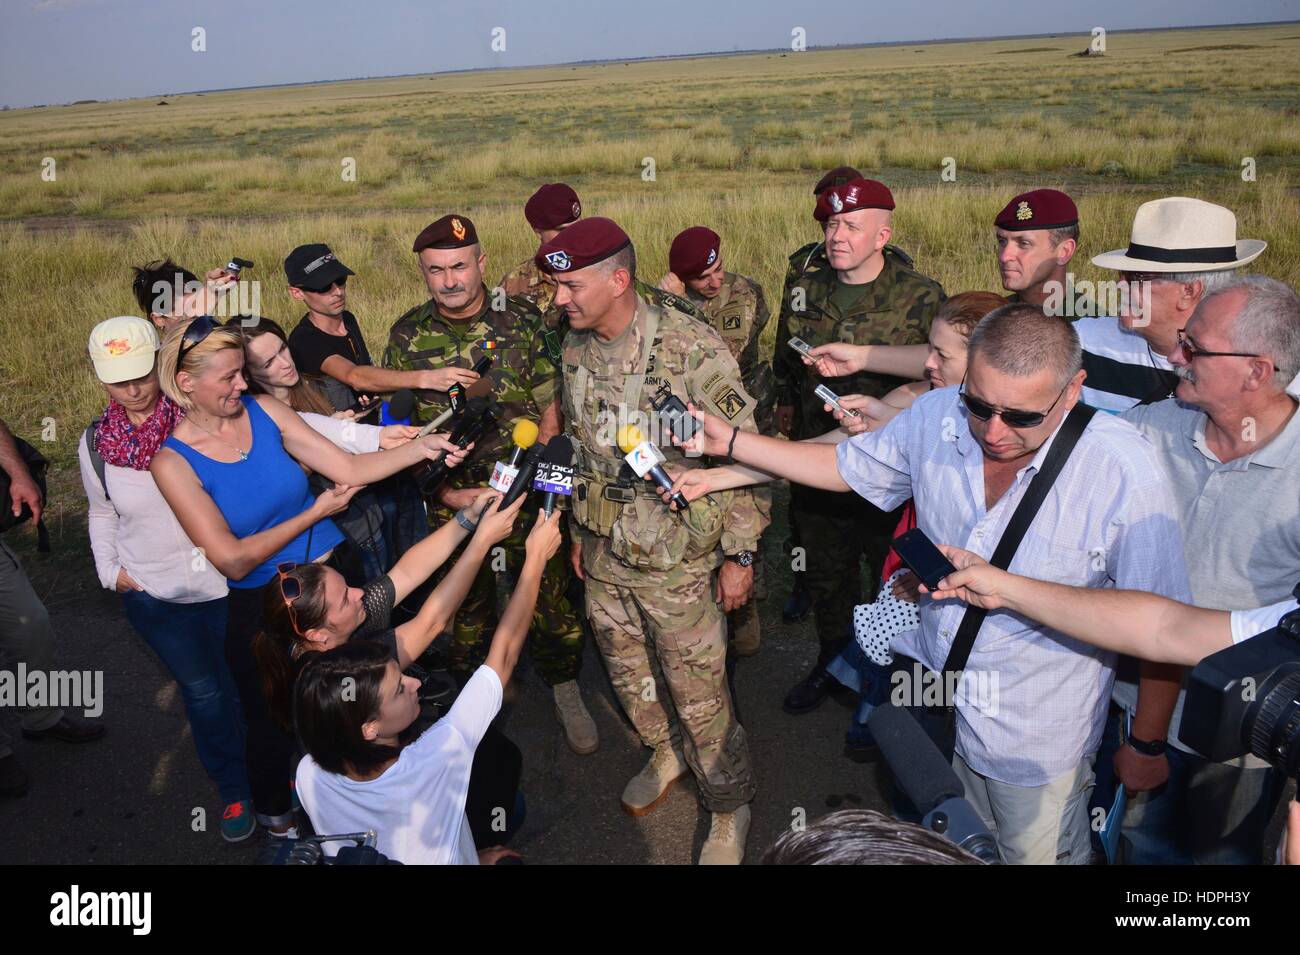 Xviiie Corps aéroporté américain Stephen Commandant Townsend parle avec la presse roumaine à la suite d'une opération opération aéroportée d'intervention rapide de l'exercice dans le secteur d'entraînement de Smardan, 26 août 2015 à Galati, Roumanie. Banque D'Images